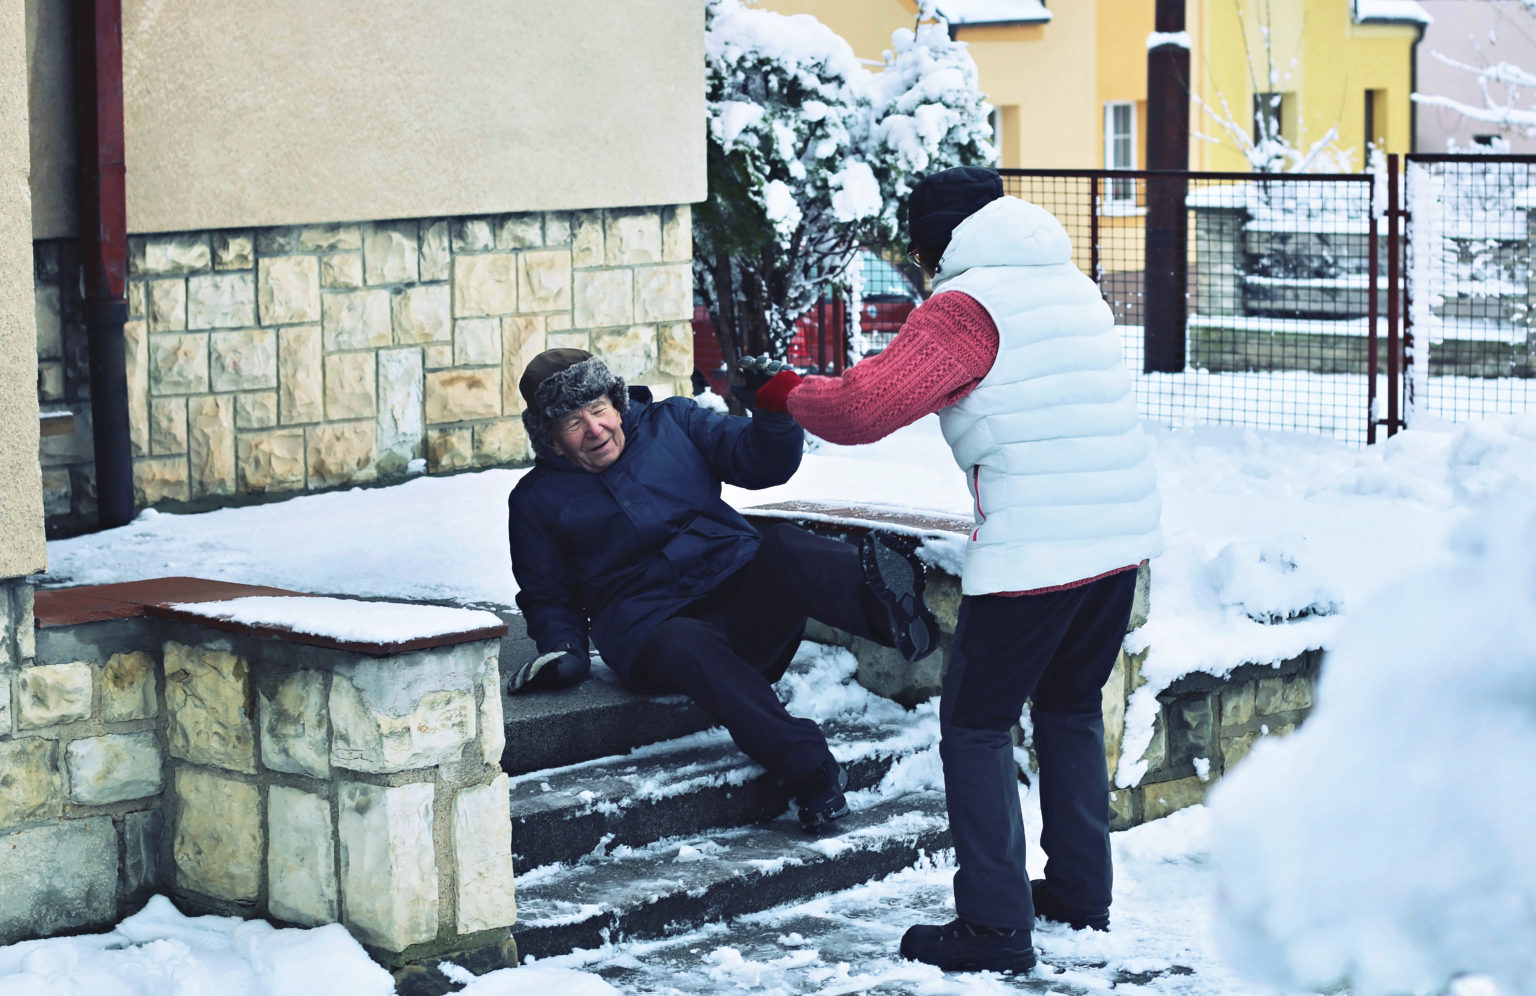 elderly man slipping on icy steps